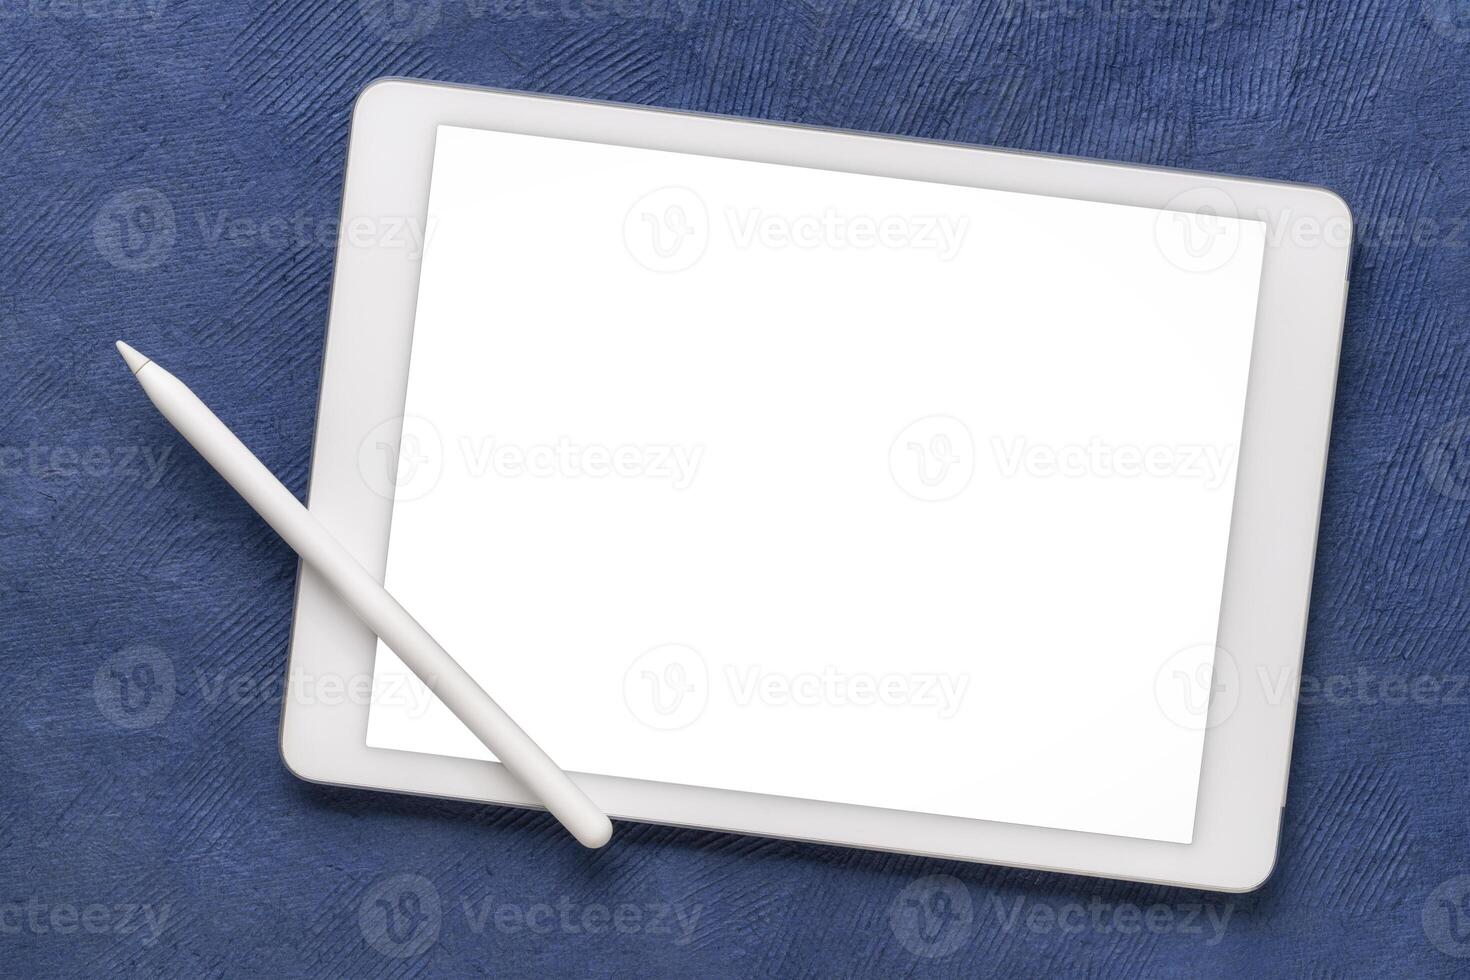 brincar do digital tábua com eletrônico lápis e uma em branco isolado tela, recorte caminho incluído, contra uma azul texturizado arte papel foto